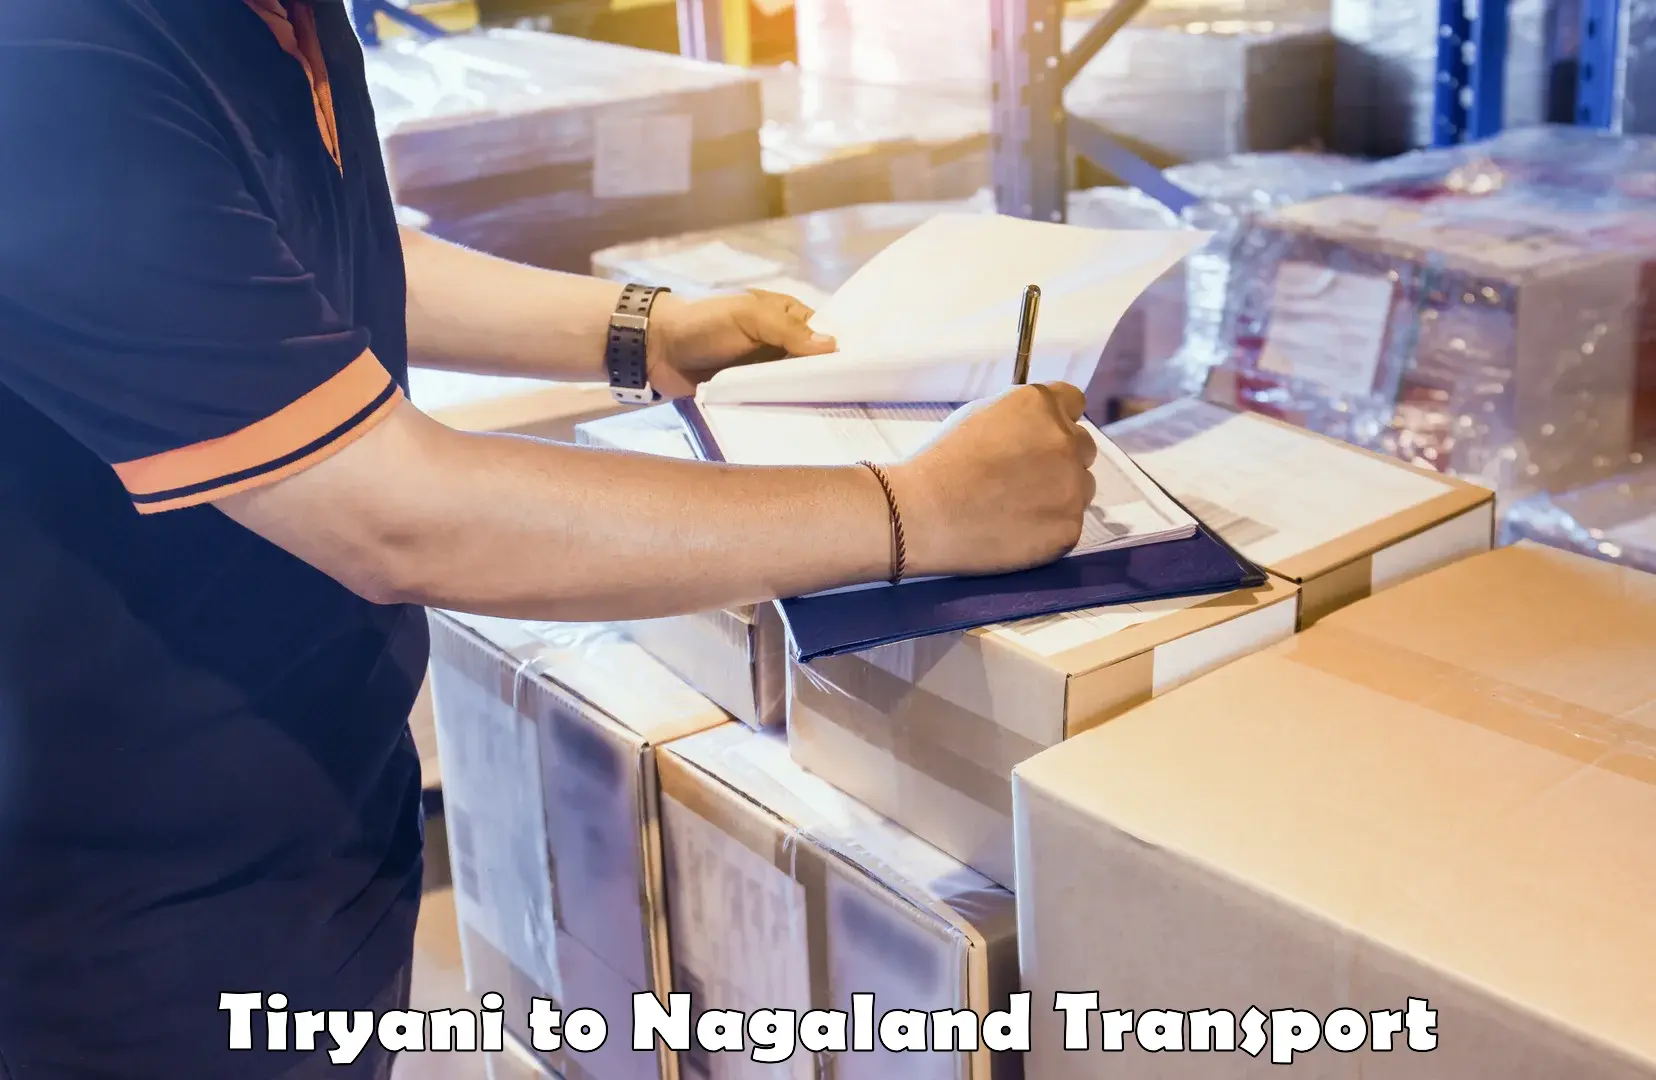 Online transport service Tiryani to Longleng